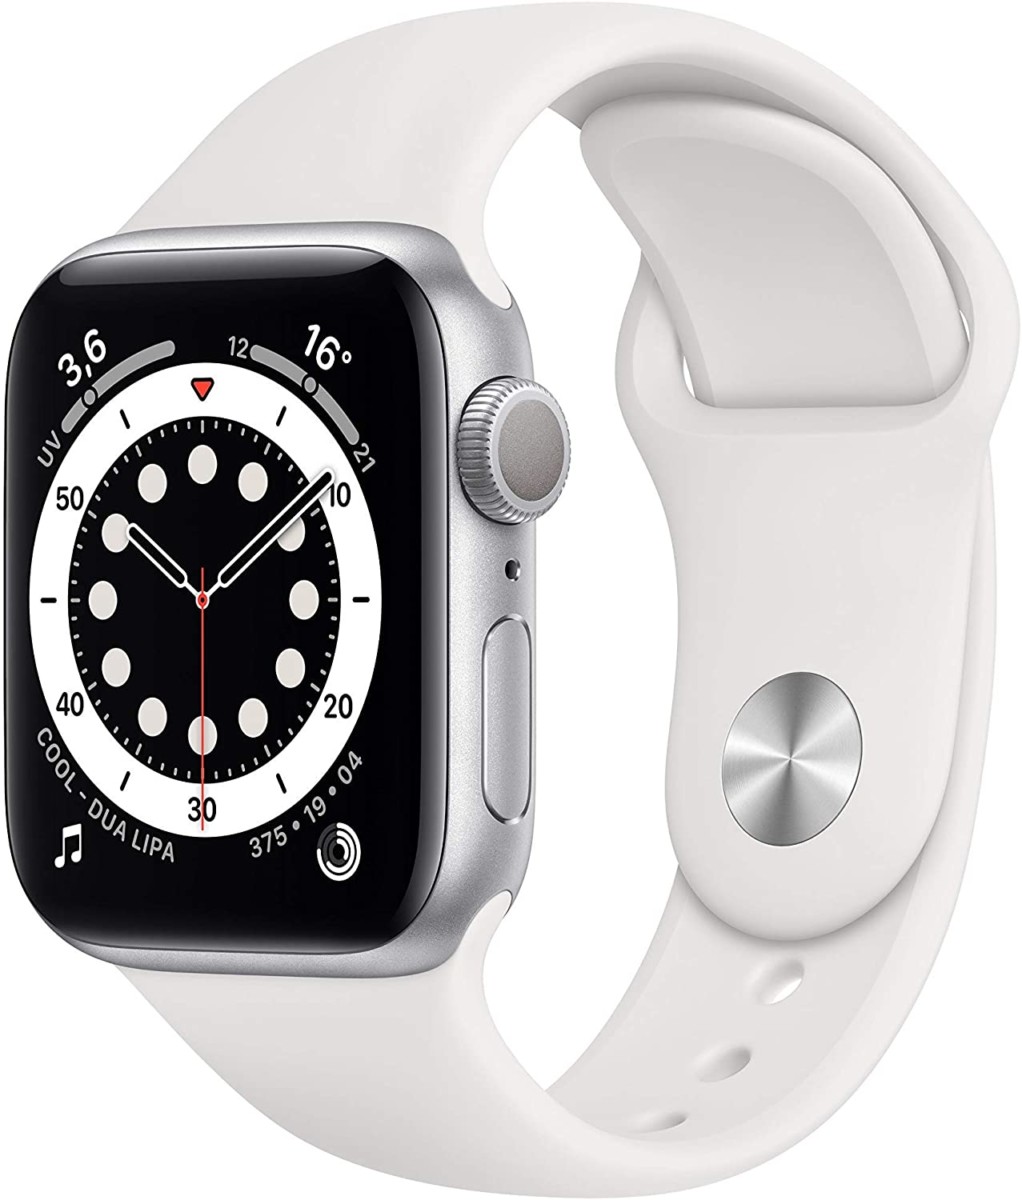 Apple Watch Series 6, lo smartwatch per gli sportivi ad un super sconto su Amazon